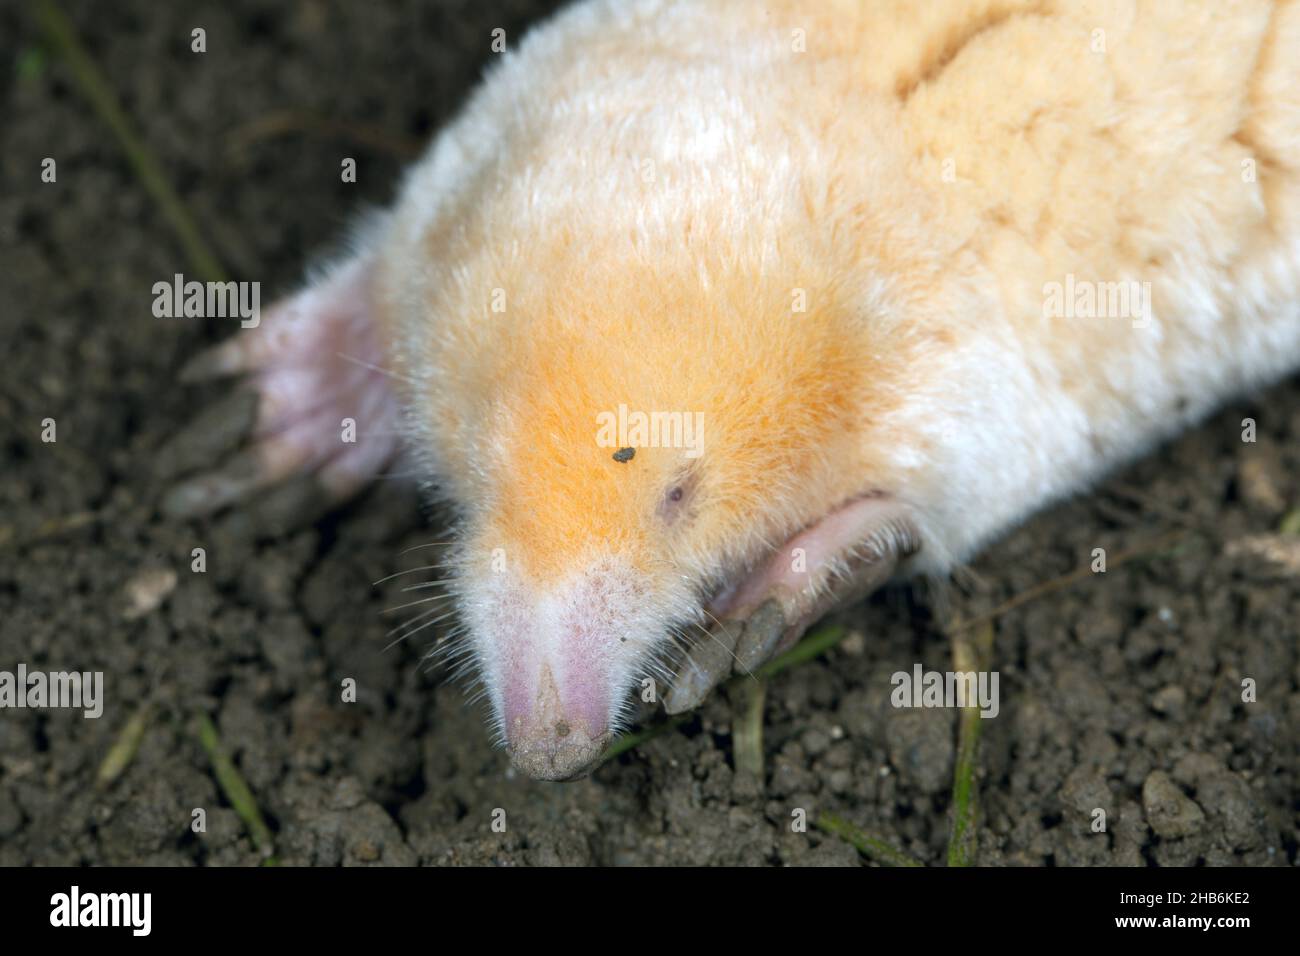 Mole europee, mole comuni, mole settentrionali (Talpa europaea), albino, ritratto , Germania Foto Stock